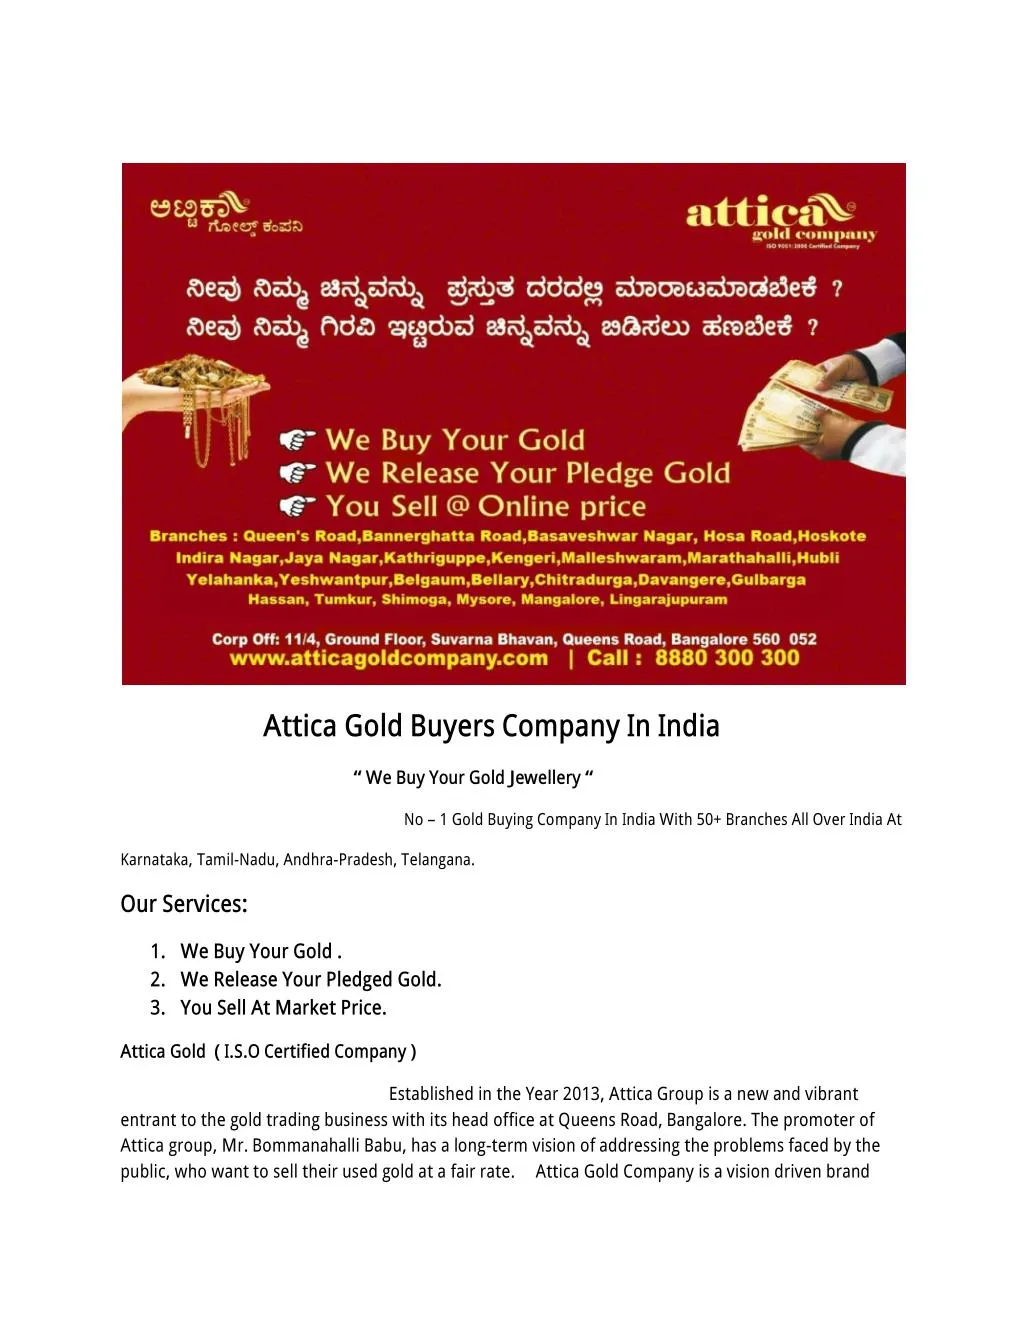 attica gold buyers company in india